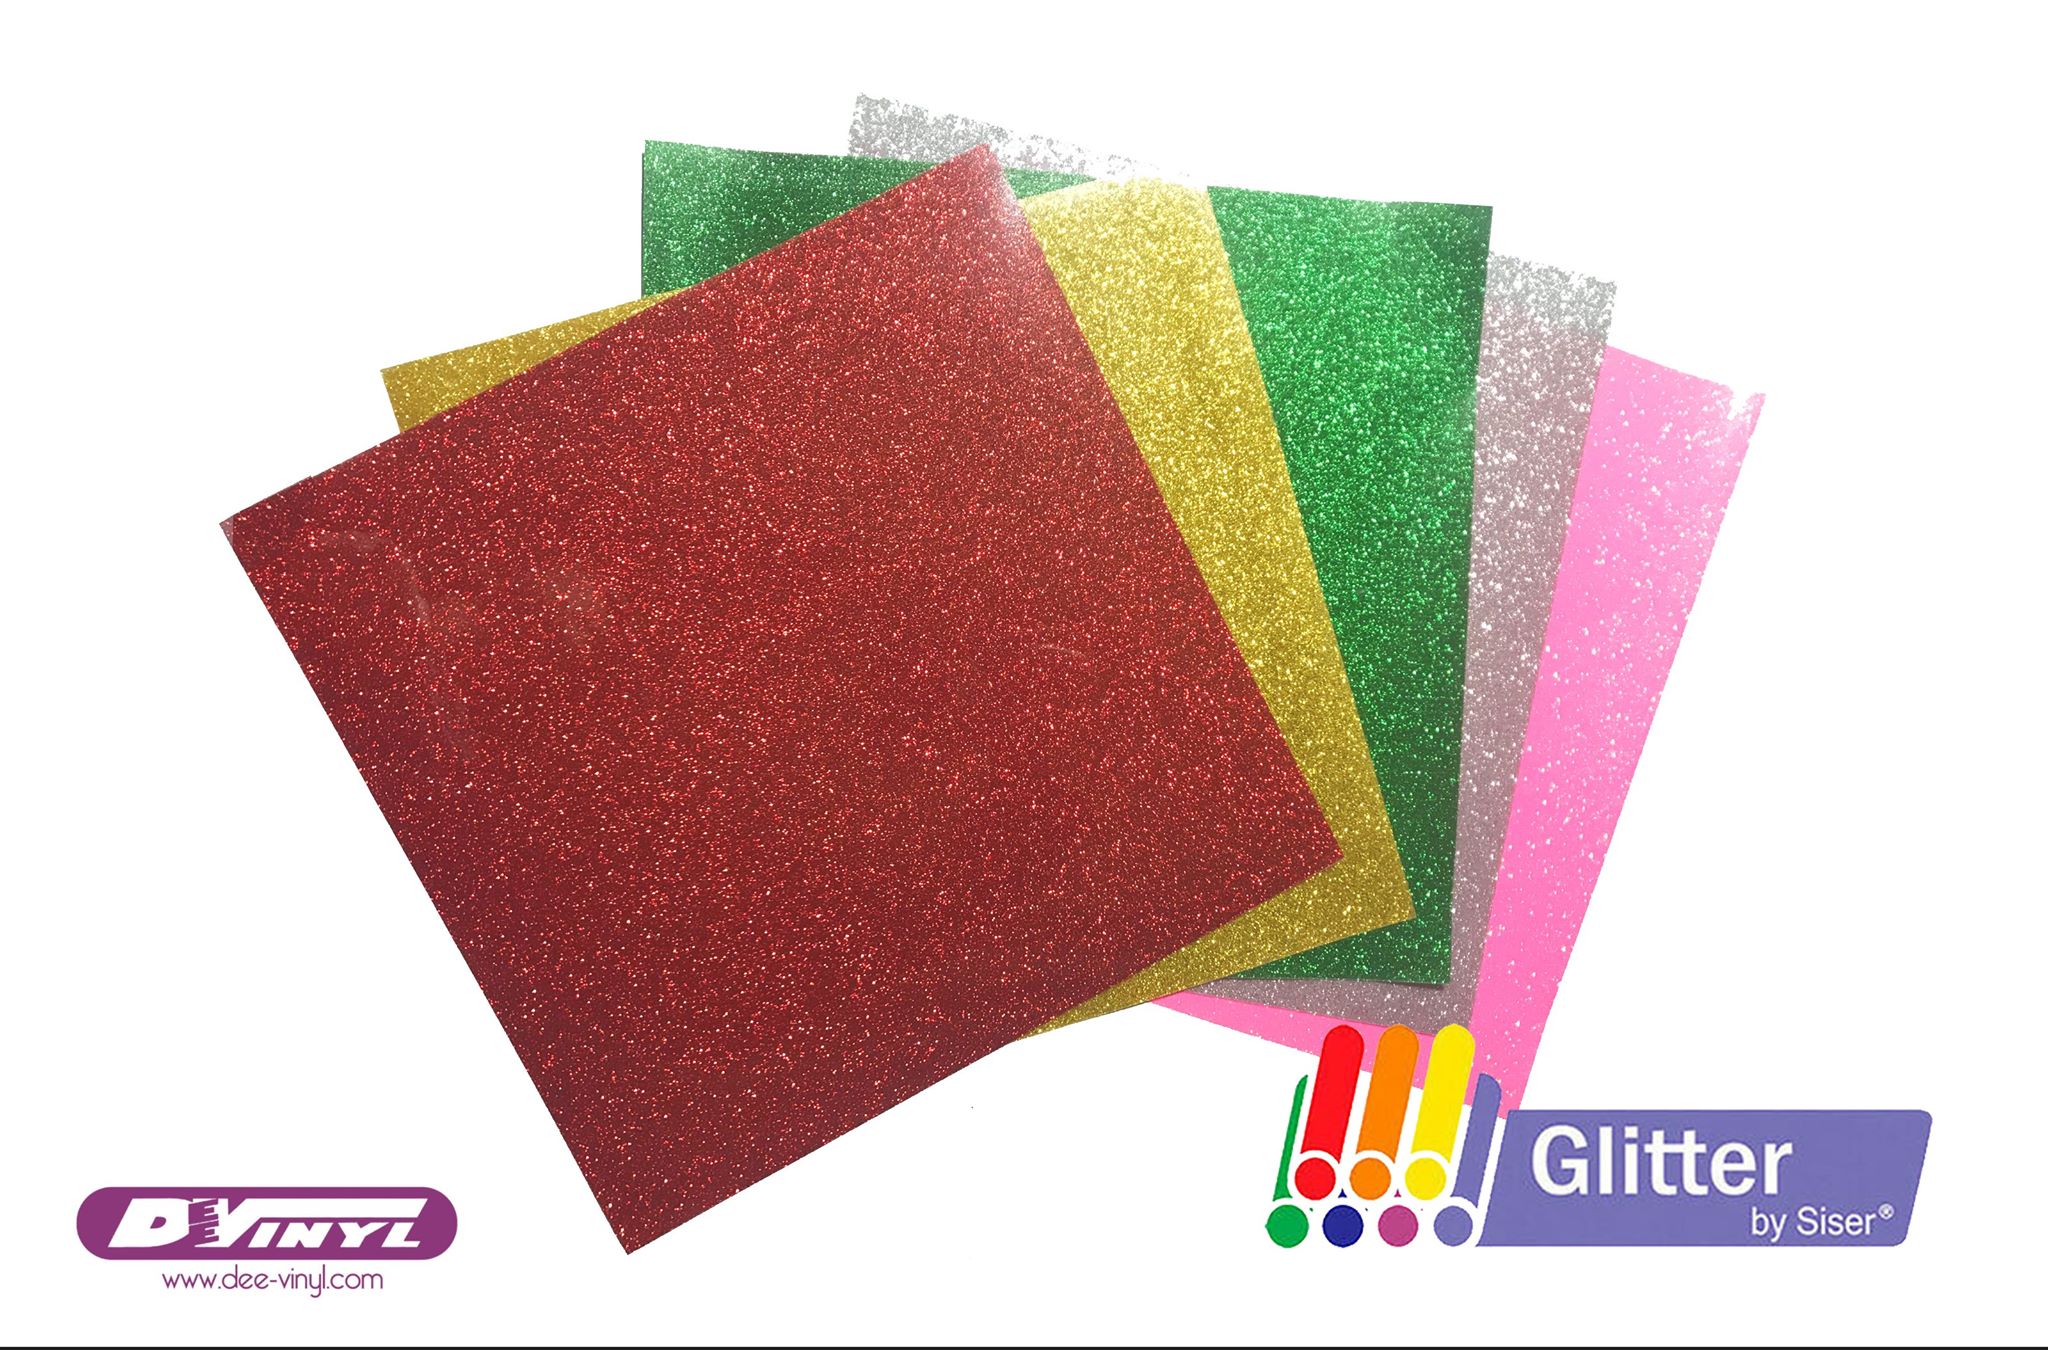 SISER Glitter HTV - Glitter Heat Transfer Vinyl - 20 in x 15 ft